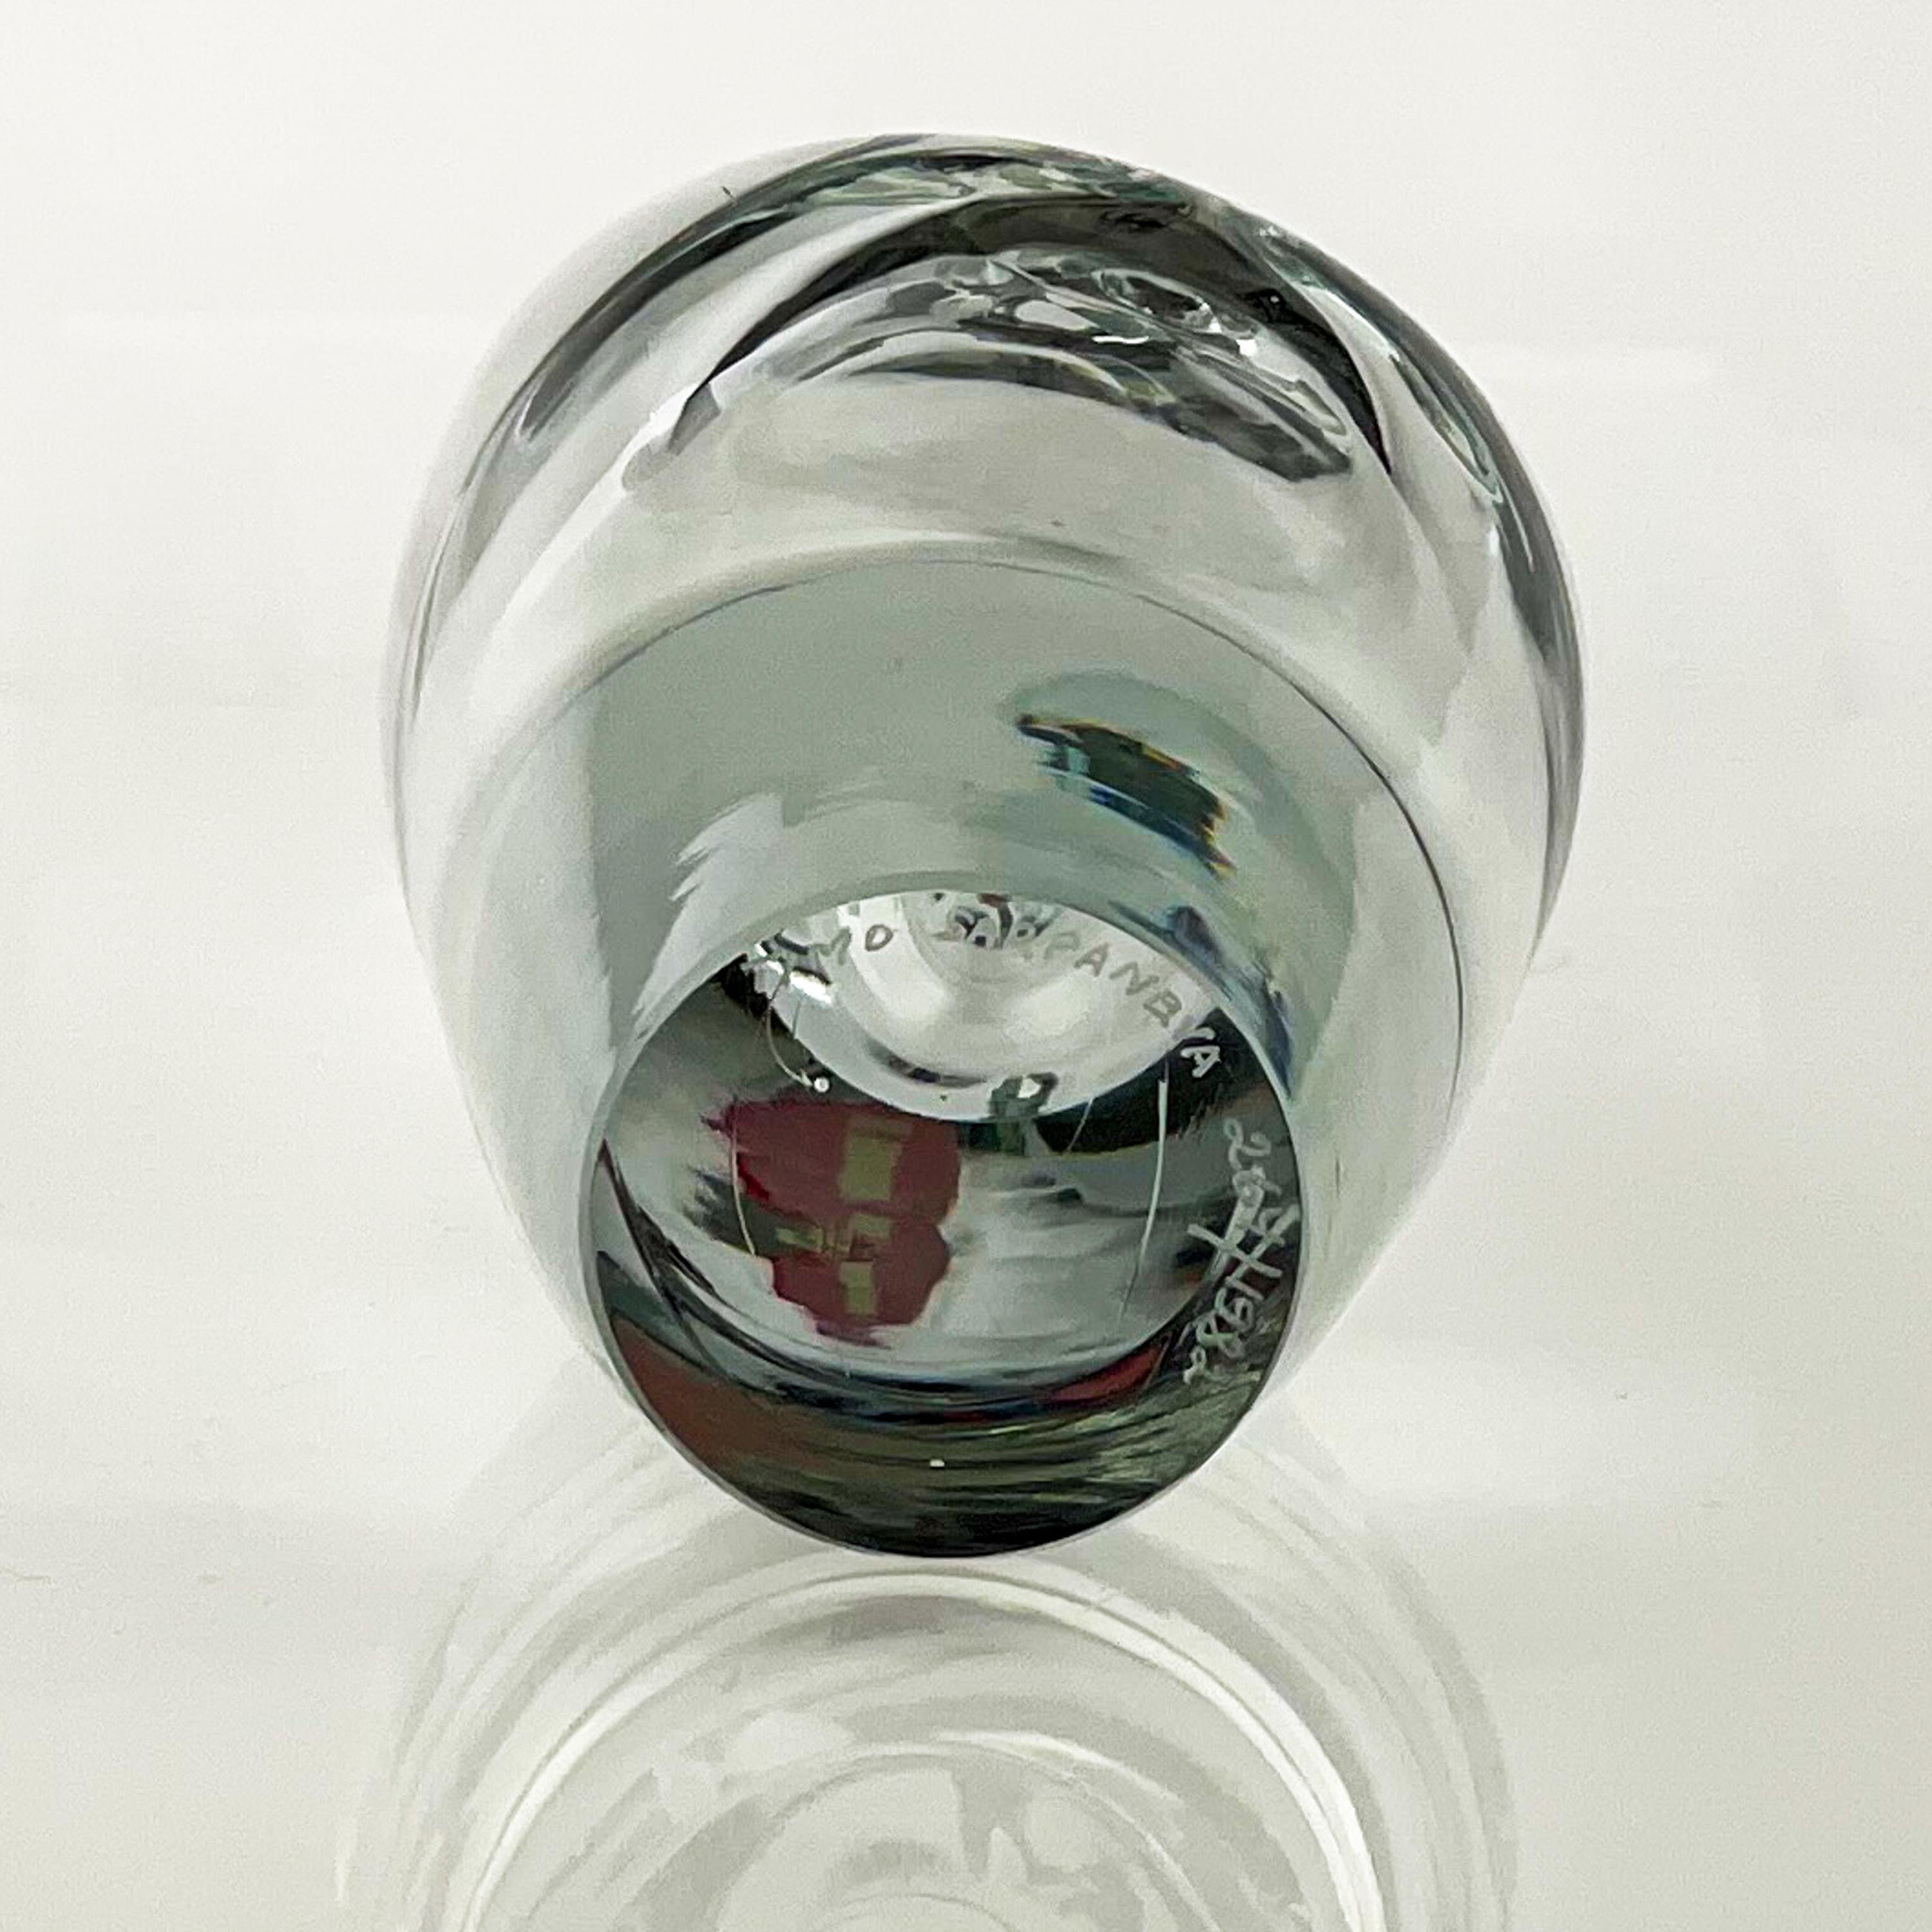 Timo Sarpaneva, Crystal Art-Object 